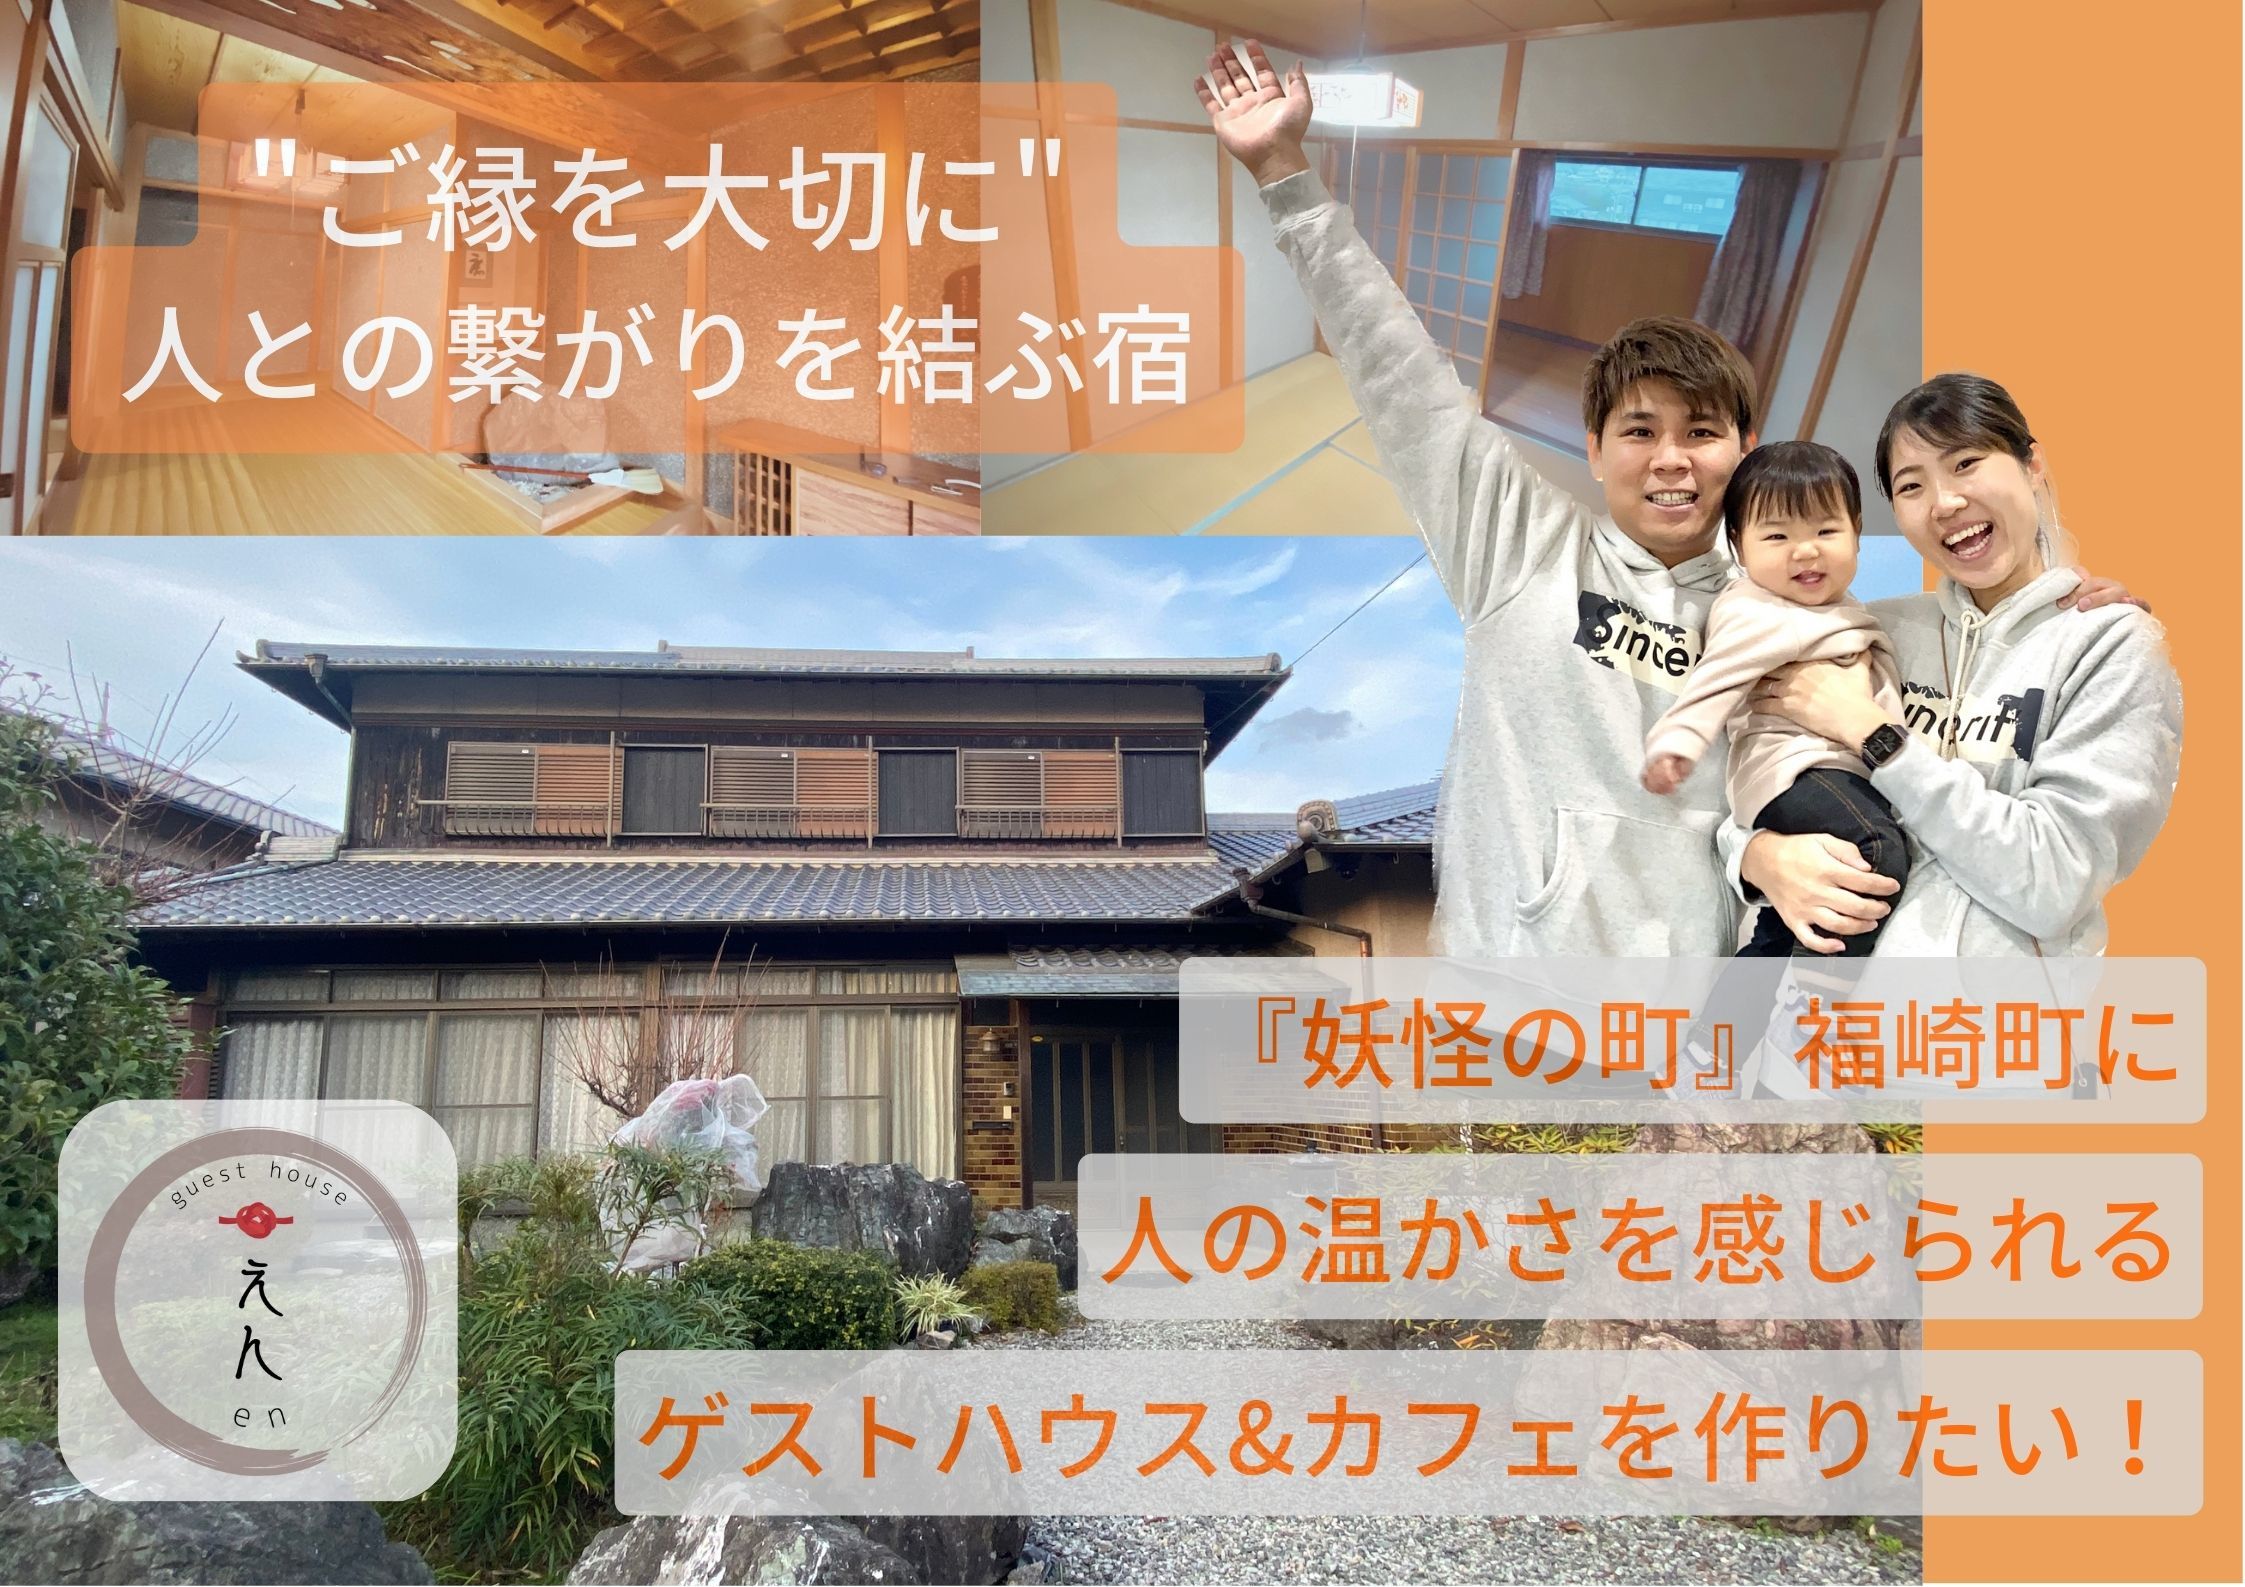 兵庫県福崎町に「ゆんたく」ができるゲストハウス＆カフェを
作るためクラウドファインディングを「CAMPFIRE」にて実施！